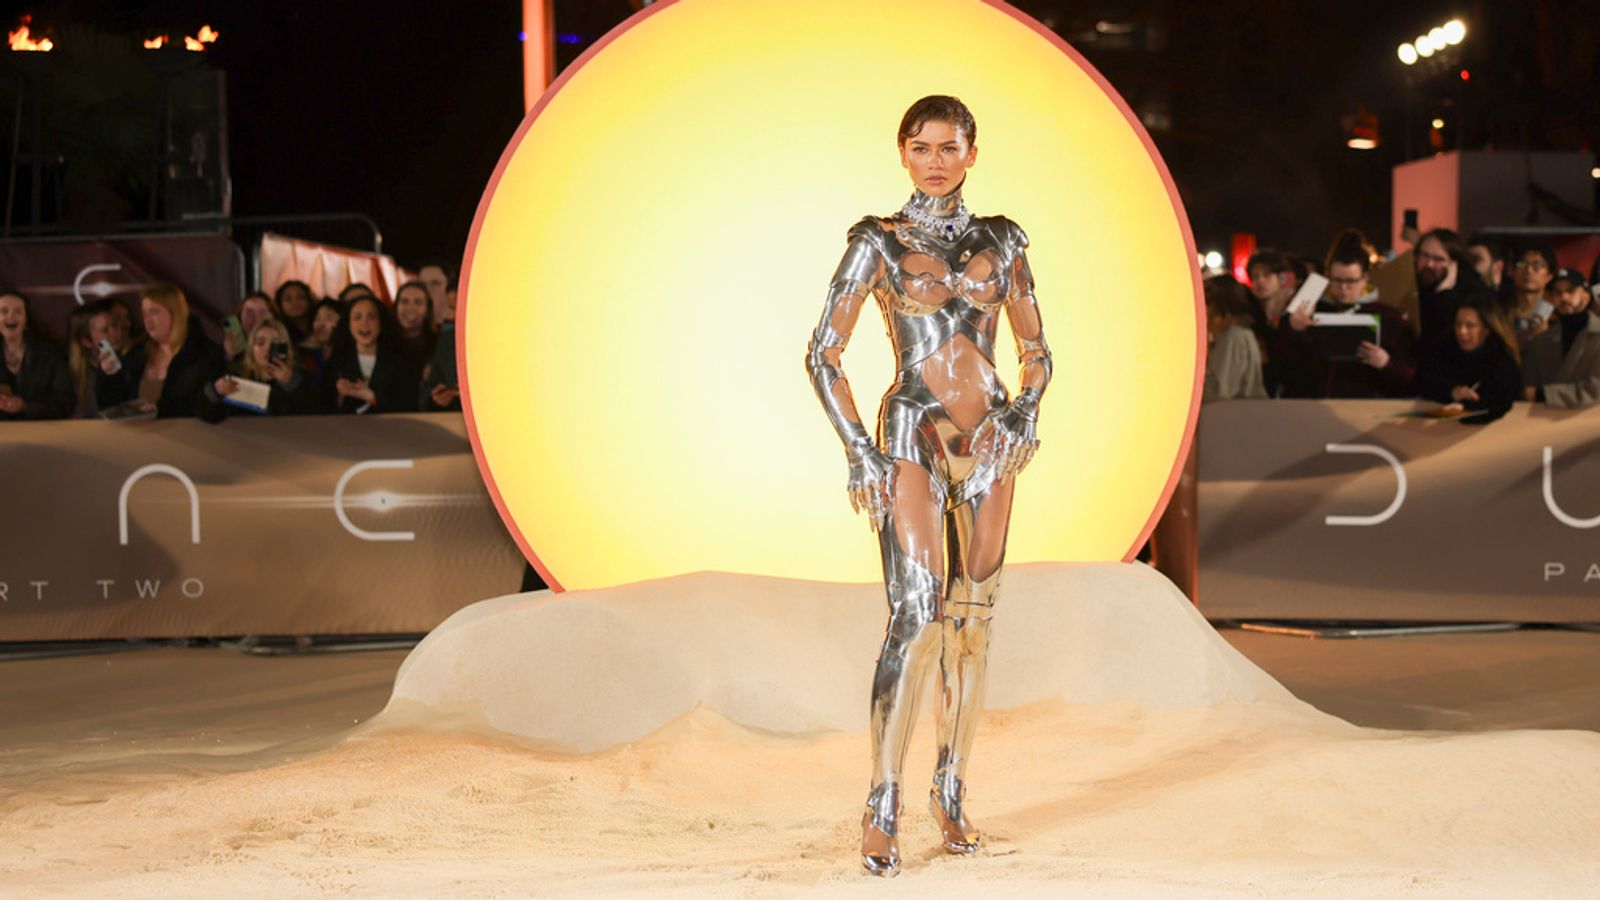 Zendaya는 Dune 프리미어에서 미래지향적인 패션으로 쇼를 훔칩니다.